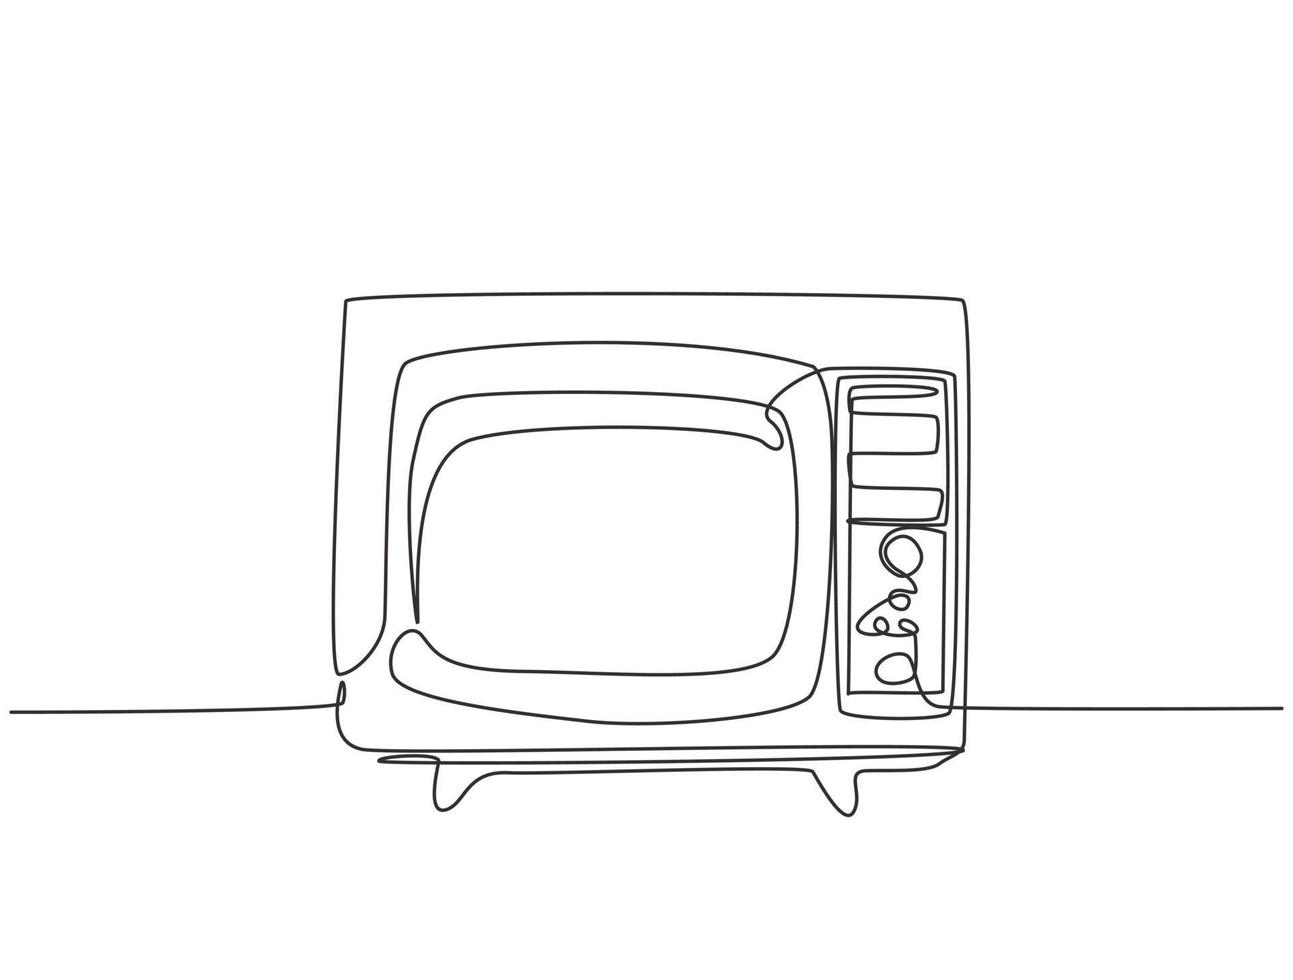 un unico disegno a tratteggio della tv retrò vecchio stile con cornice in legno. antico concetto di televisione analogica vintage linea continua disegnare disegno vettoriale illustrazione grafica